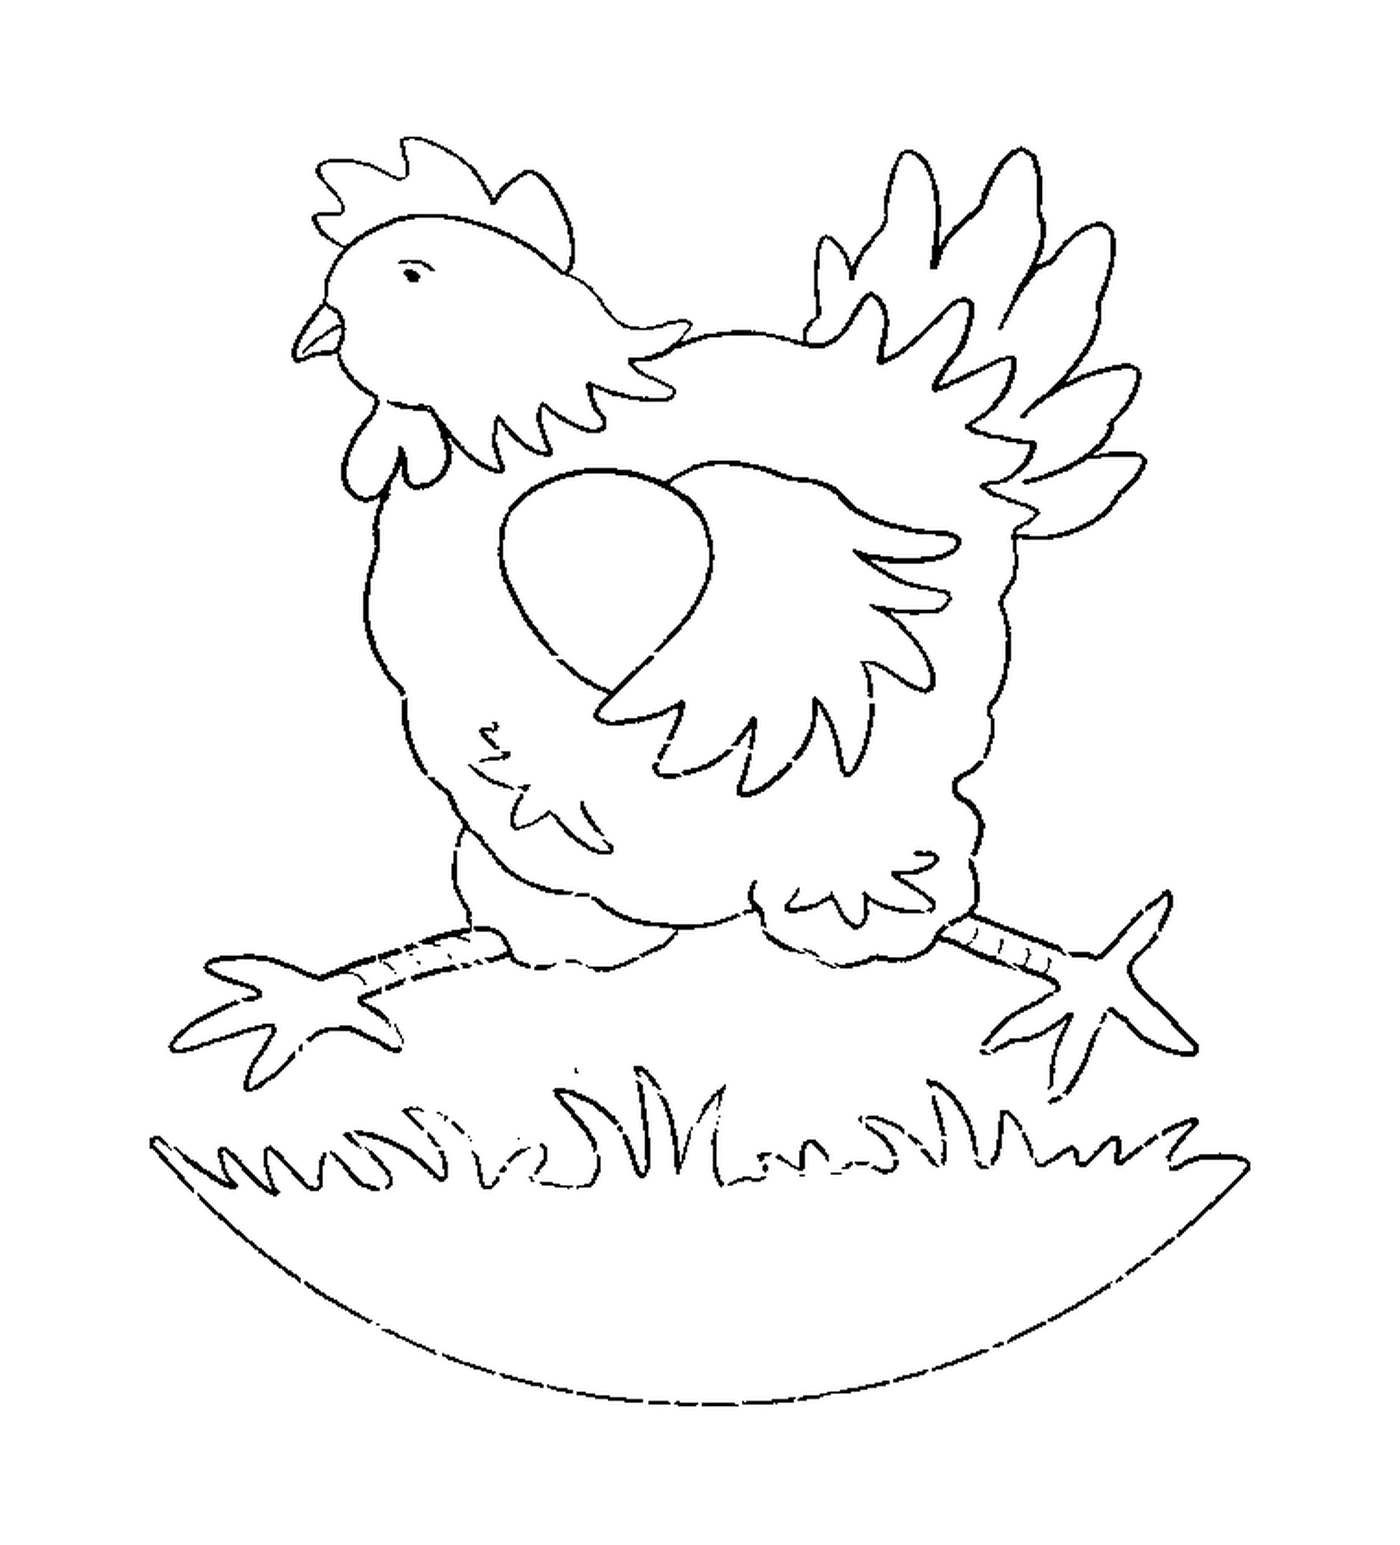  Pollo in piedi sull'uovo 